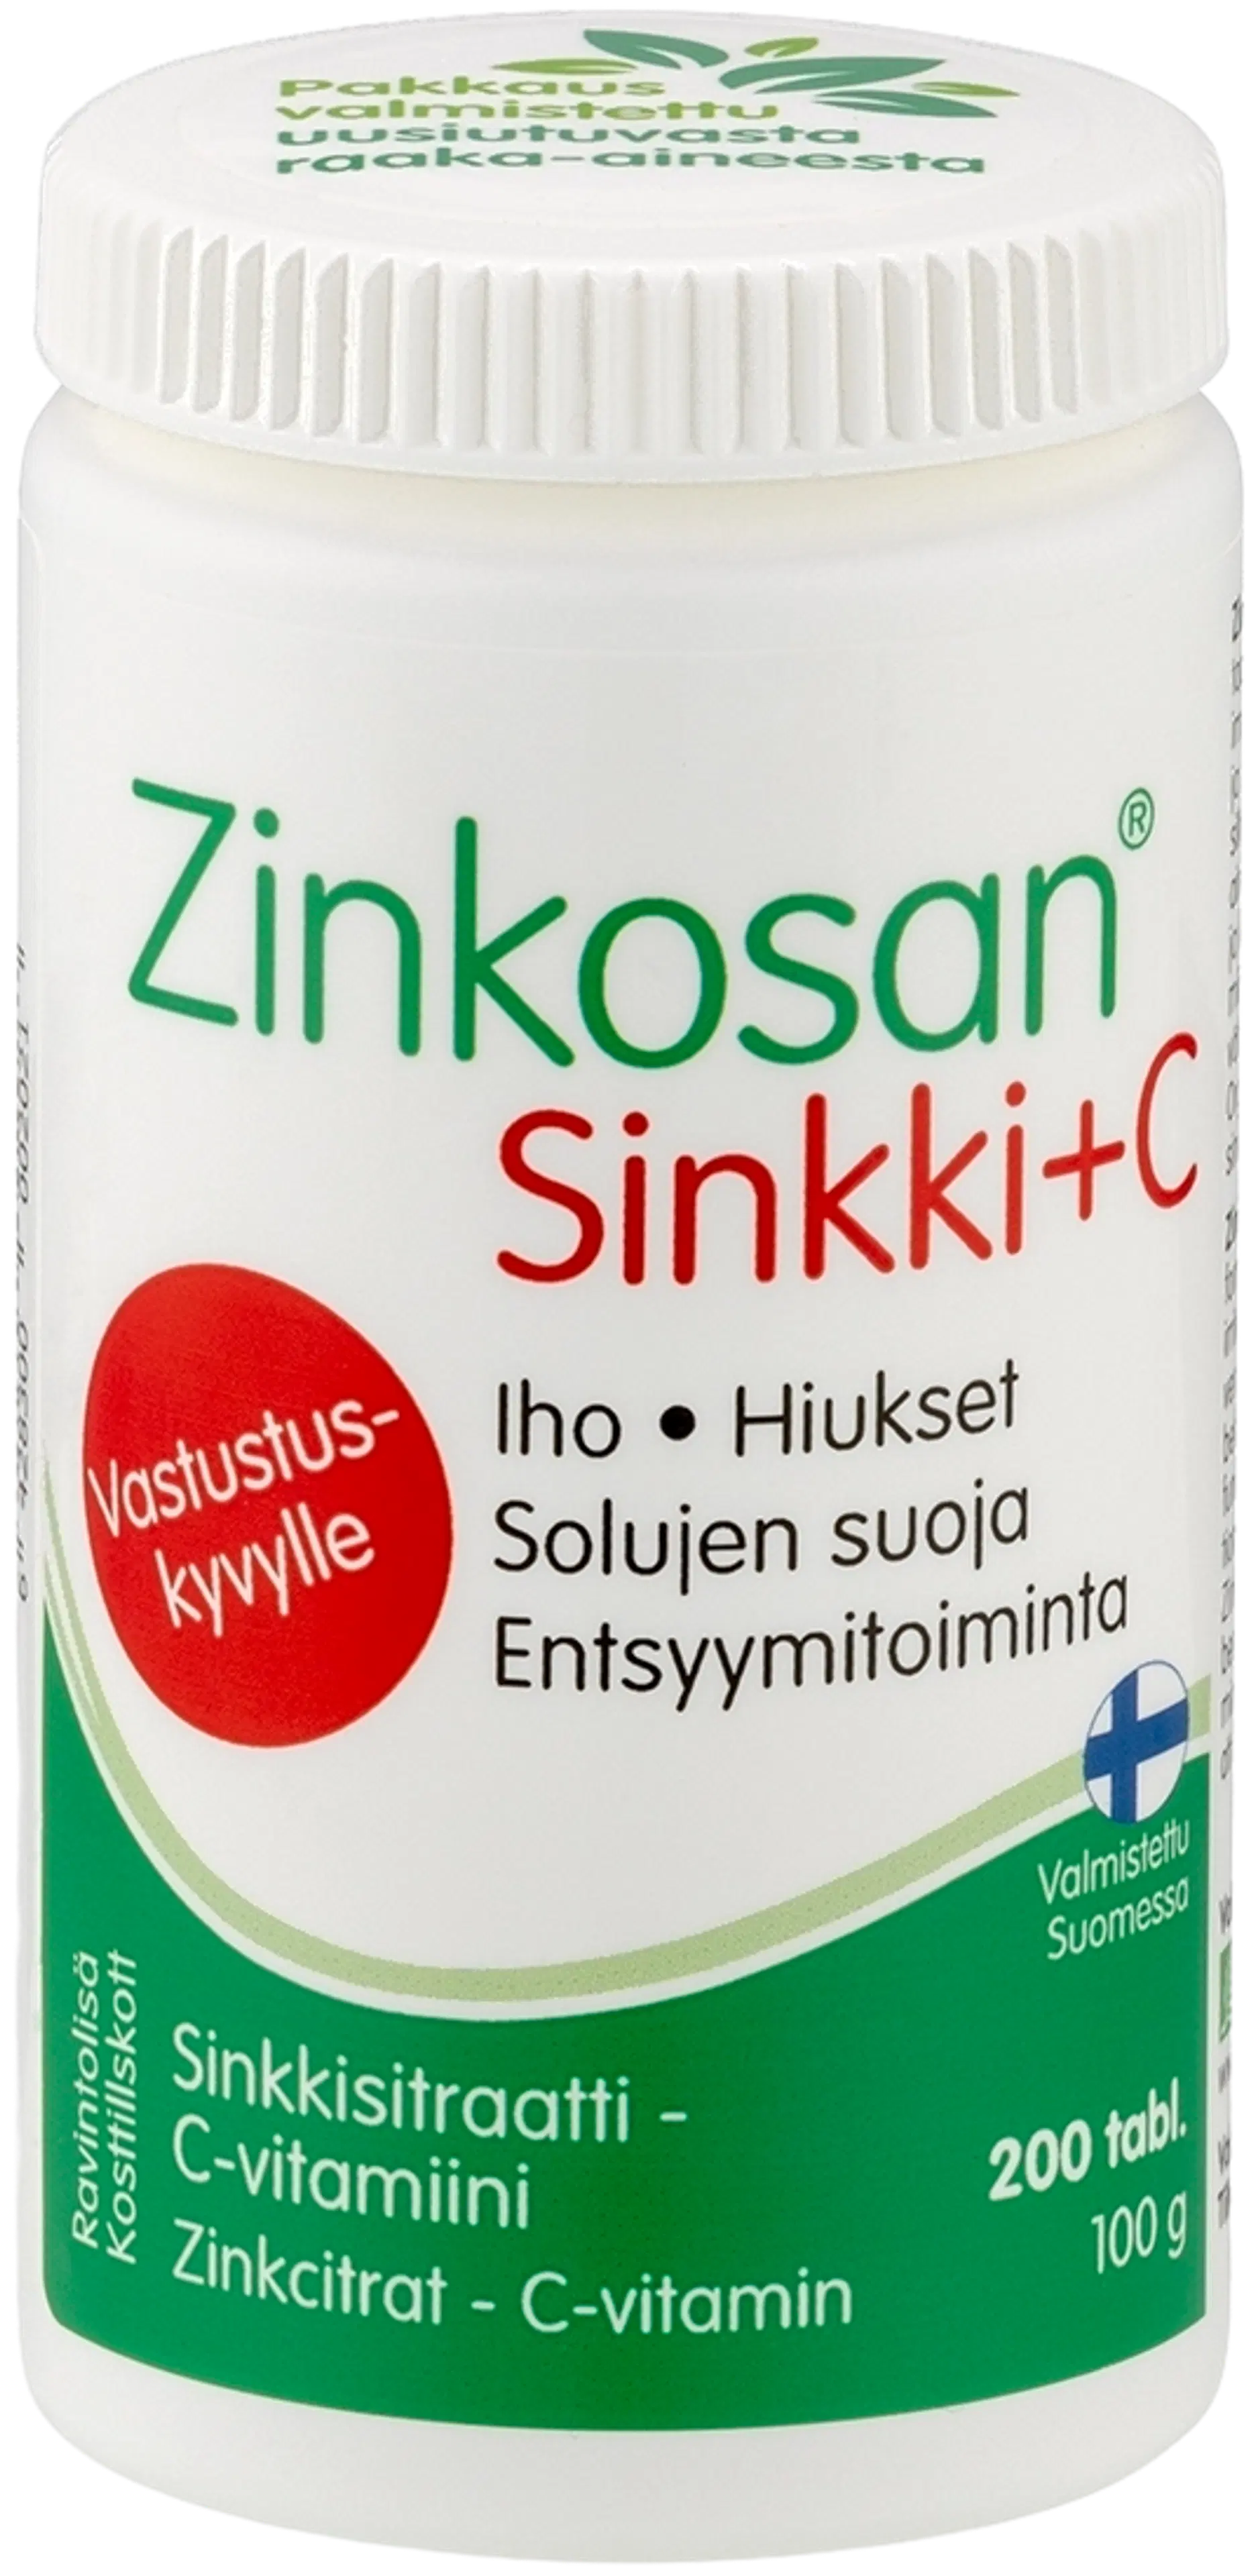 Zinkosan Sinkki + C sinkkisitraatti - C-vitamiini 200 tabl